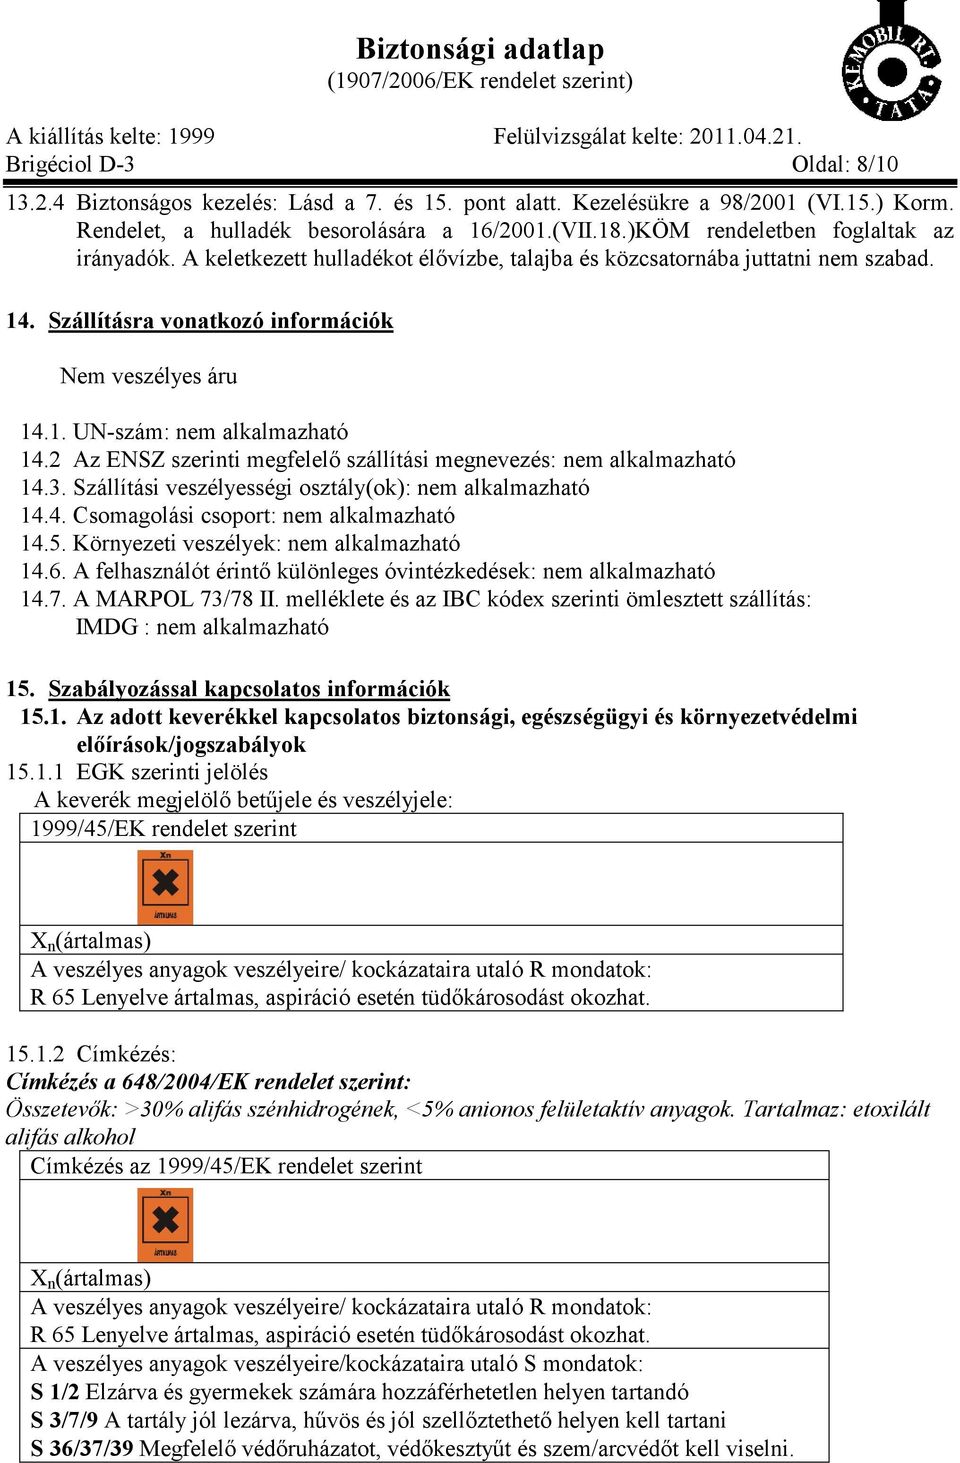 Biztonsági adatlap (1907/2006/EK rendelet szerint) - PDF Free Download